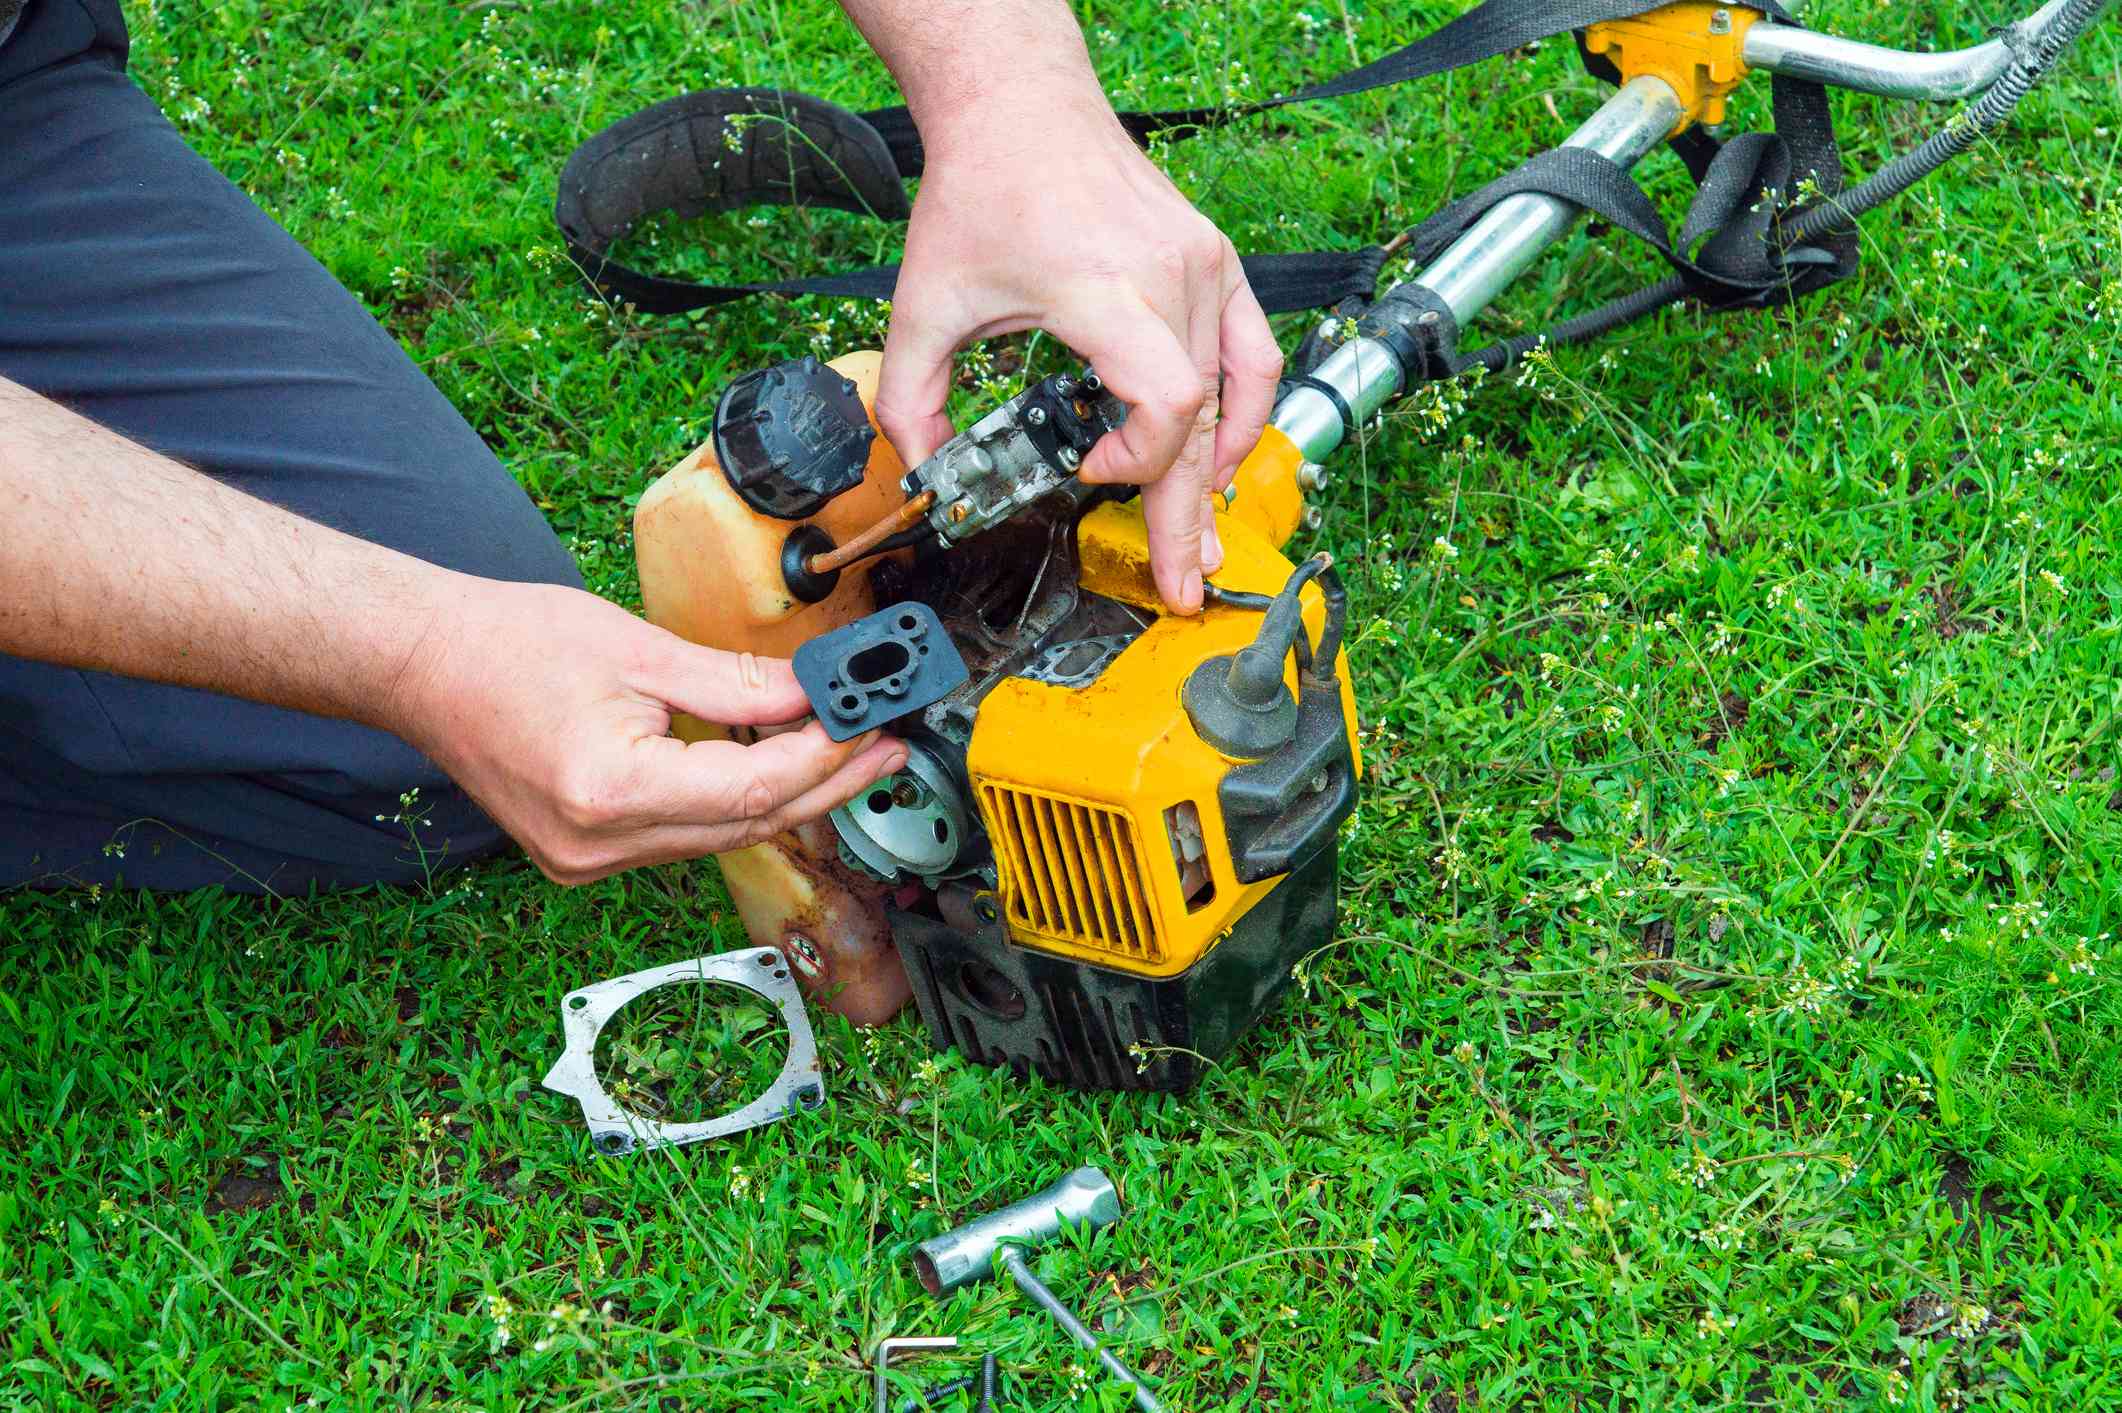 How to clean lawnmower carburetor?